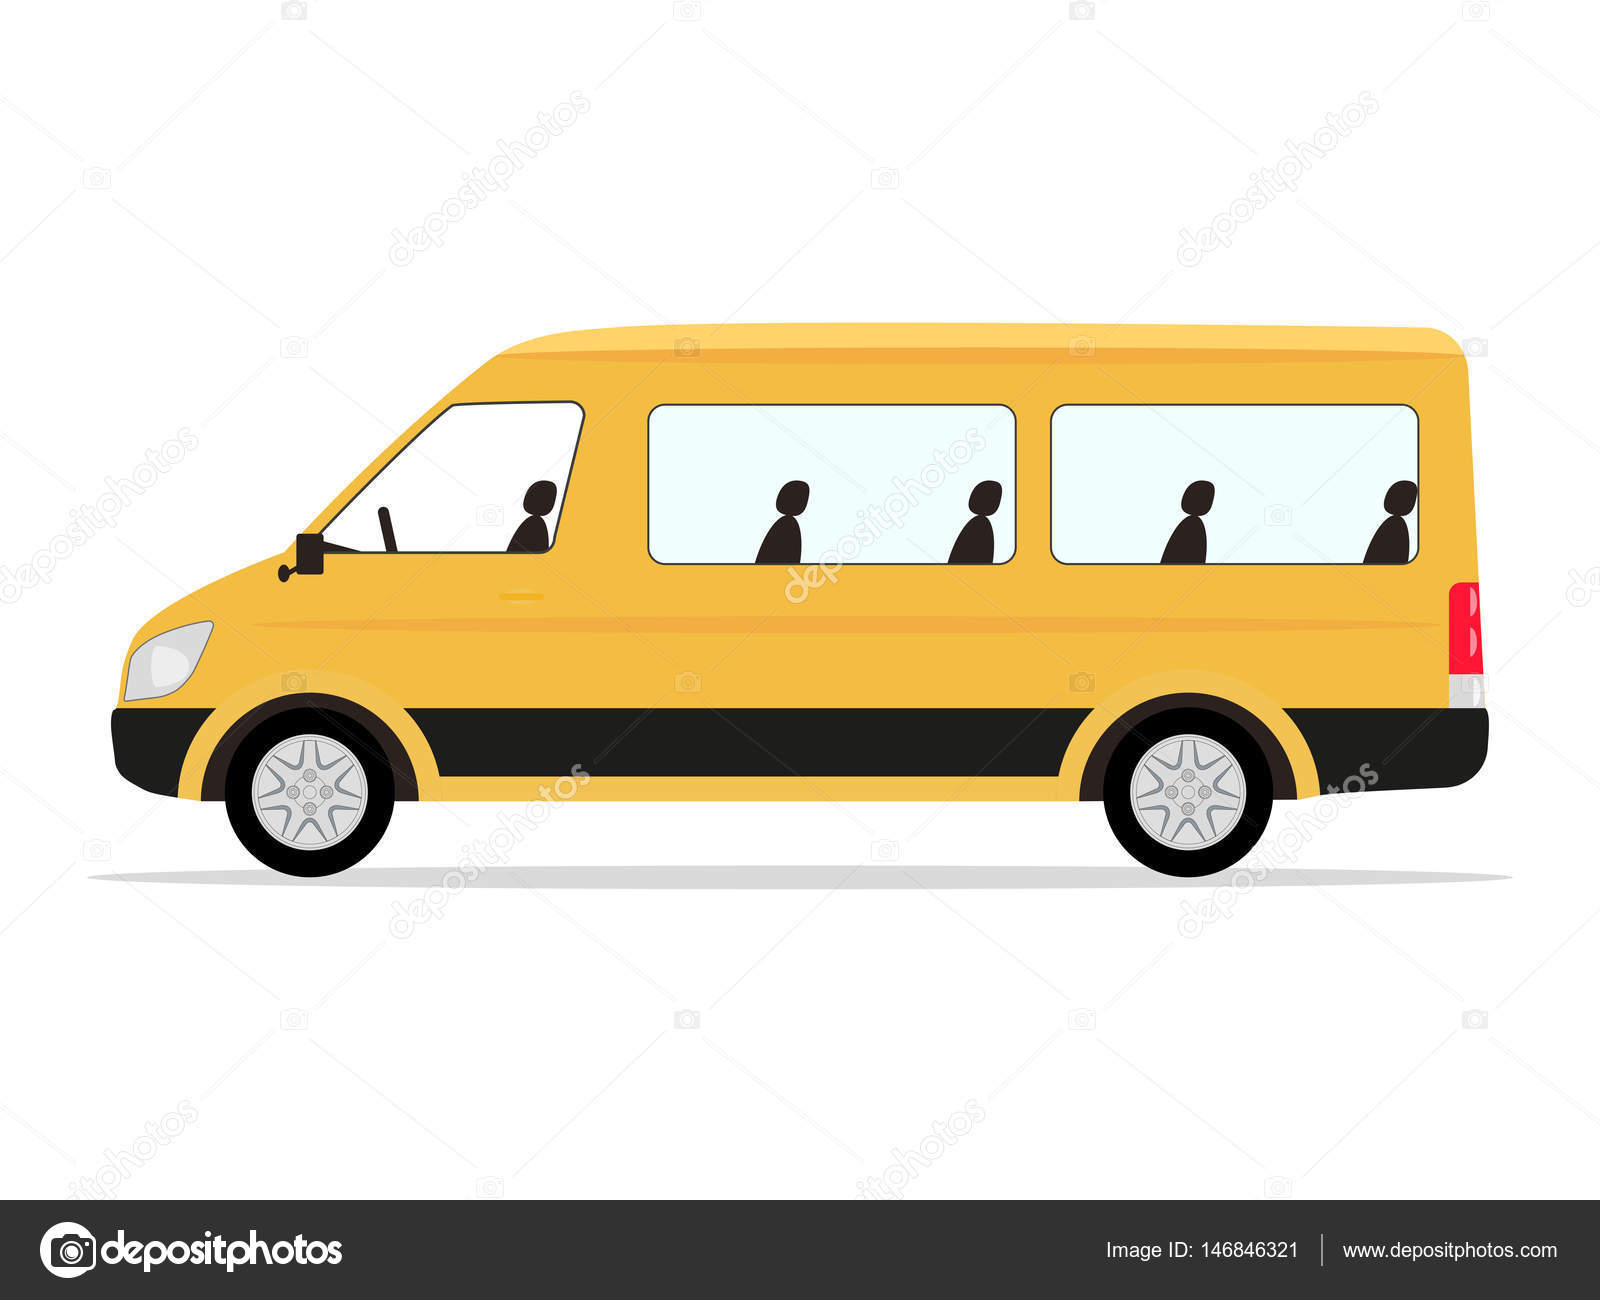 Такси автобус дети. Микроавтобус вектор сбоку. Минибус вектор. Нарисовать маршрутку. Маршрутное такси вектор.